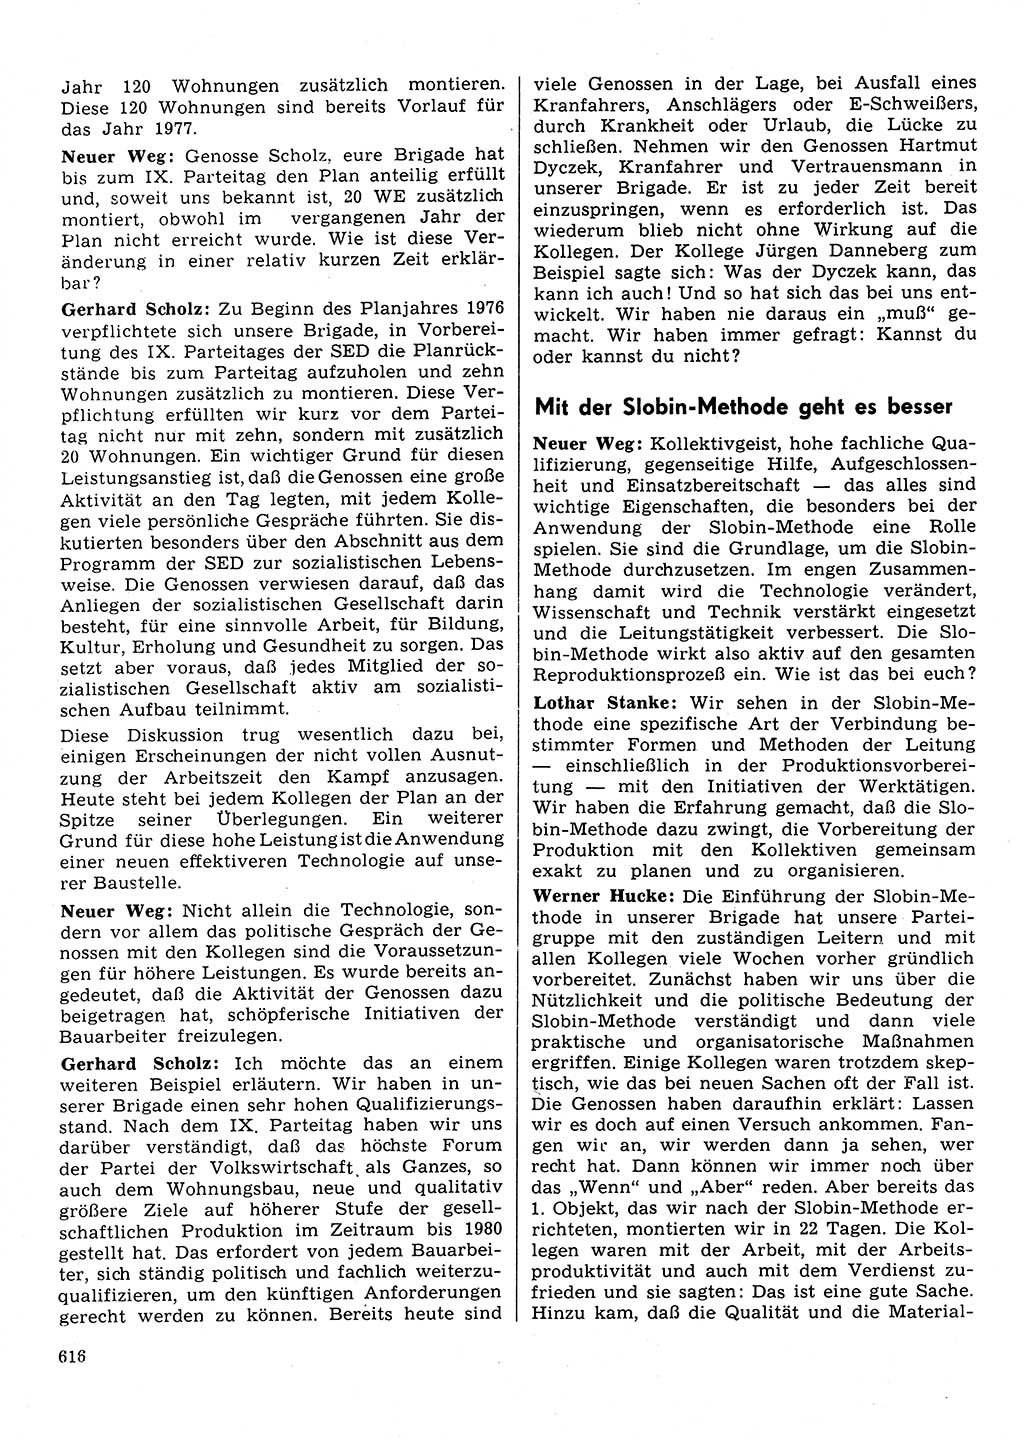 Neuer Weg (NW), Organ des Zentralkomitees (ZK) der SED (Sozialistische Einheitspartei Deutschlands) für Fragen des Parteilebens, 31. Jahrgang [Deutsche Demokratische Republik (DDR)] 1976, Seite 616 (NW ZK SED DDR 1976, S. 616)